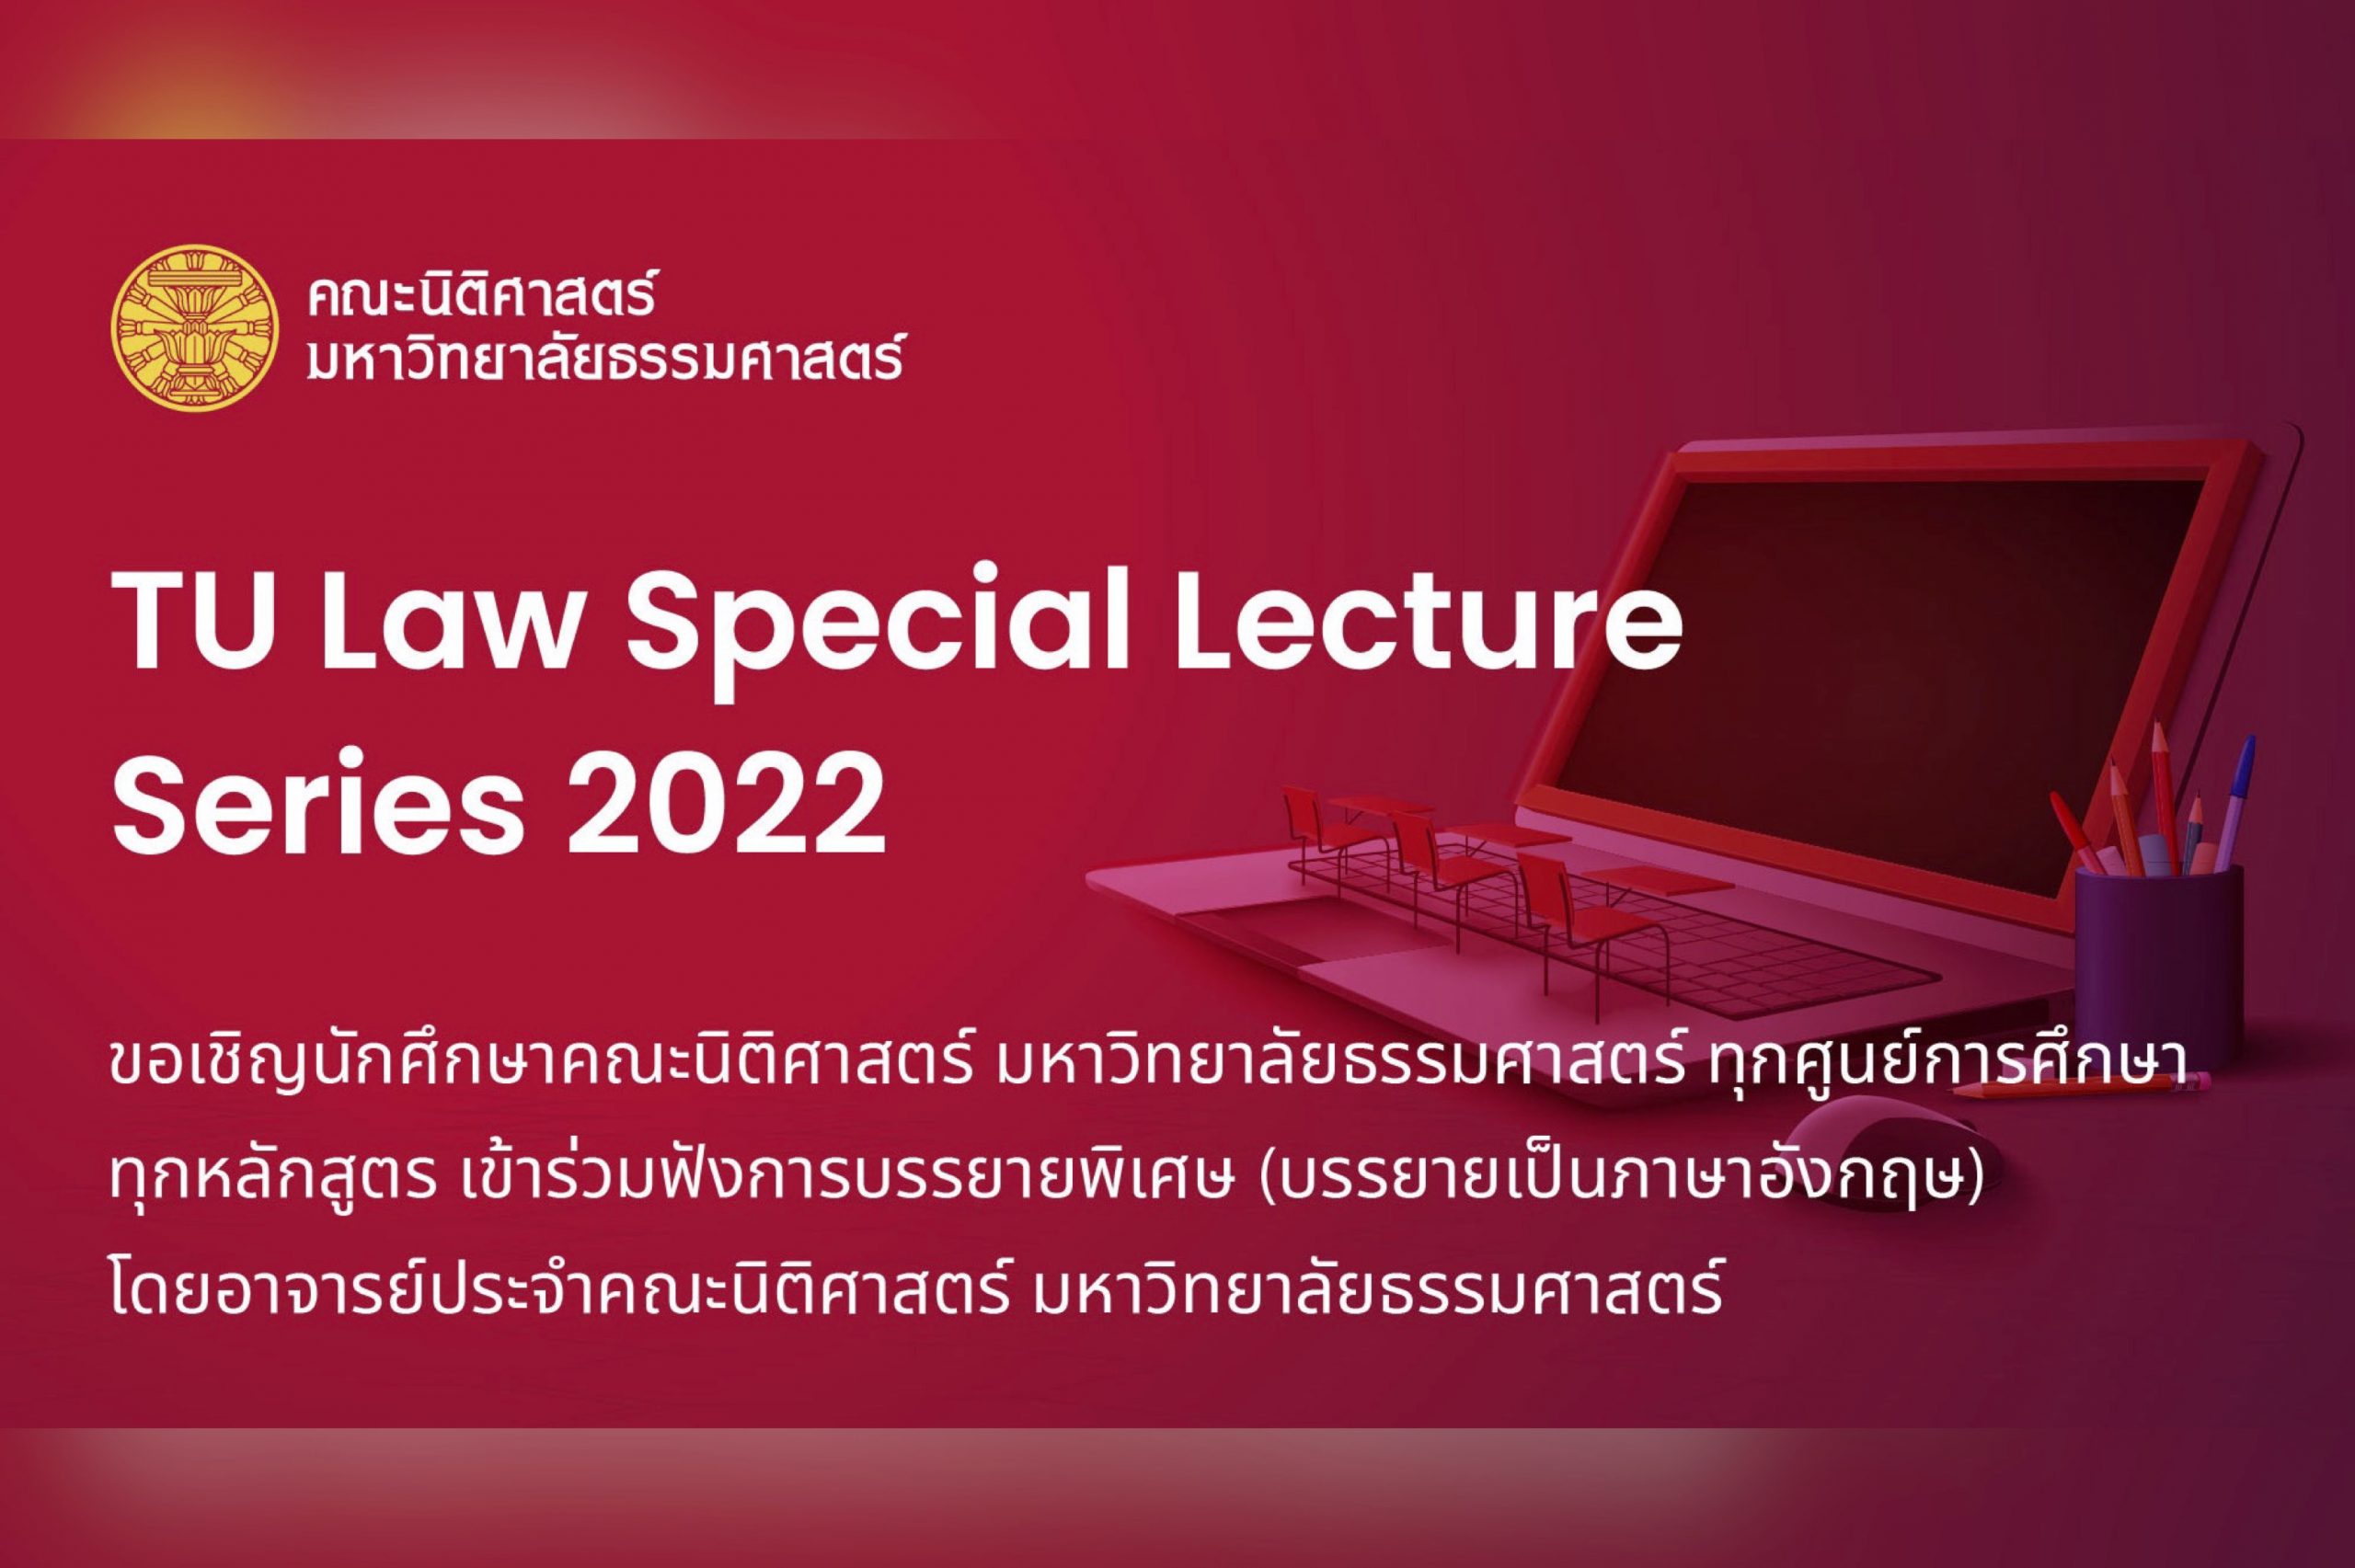 สรุปผลโครงการ TU Law Special Lecture Series 2022